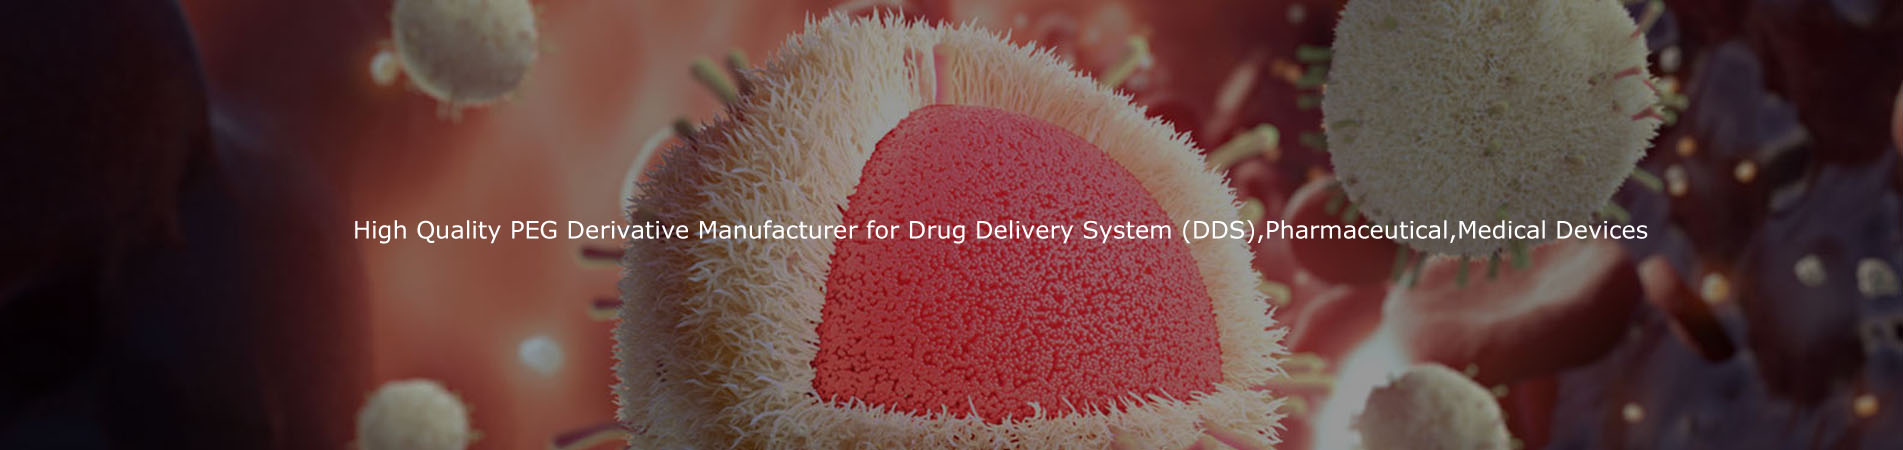 İlaç Teslim Sistemi (DDS), İlaç, Tıbbi Cihazlar için Yüksek Kaliteli PEG Türev Üreticisi